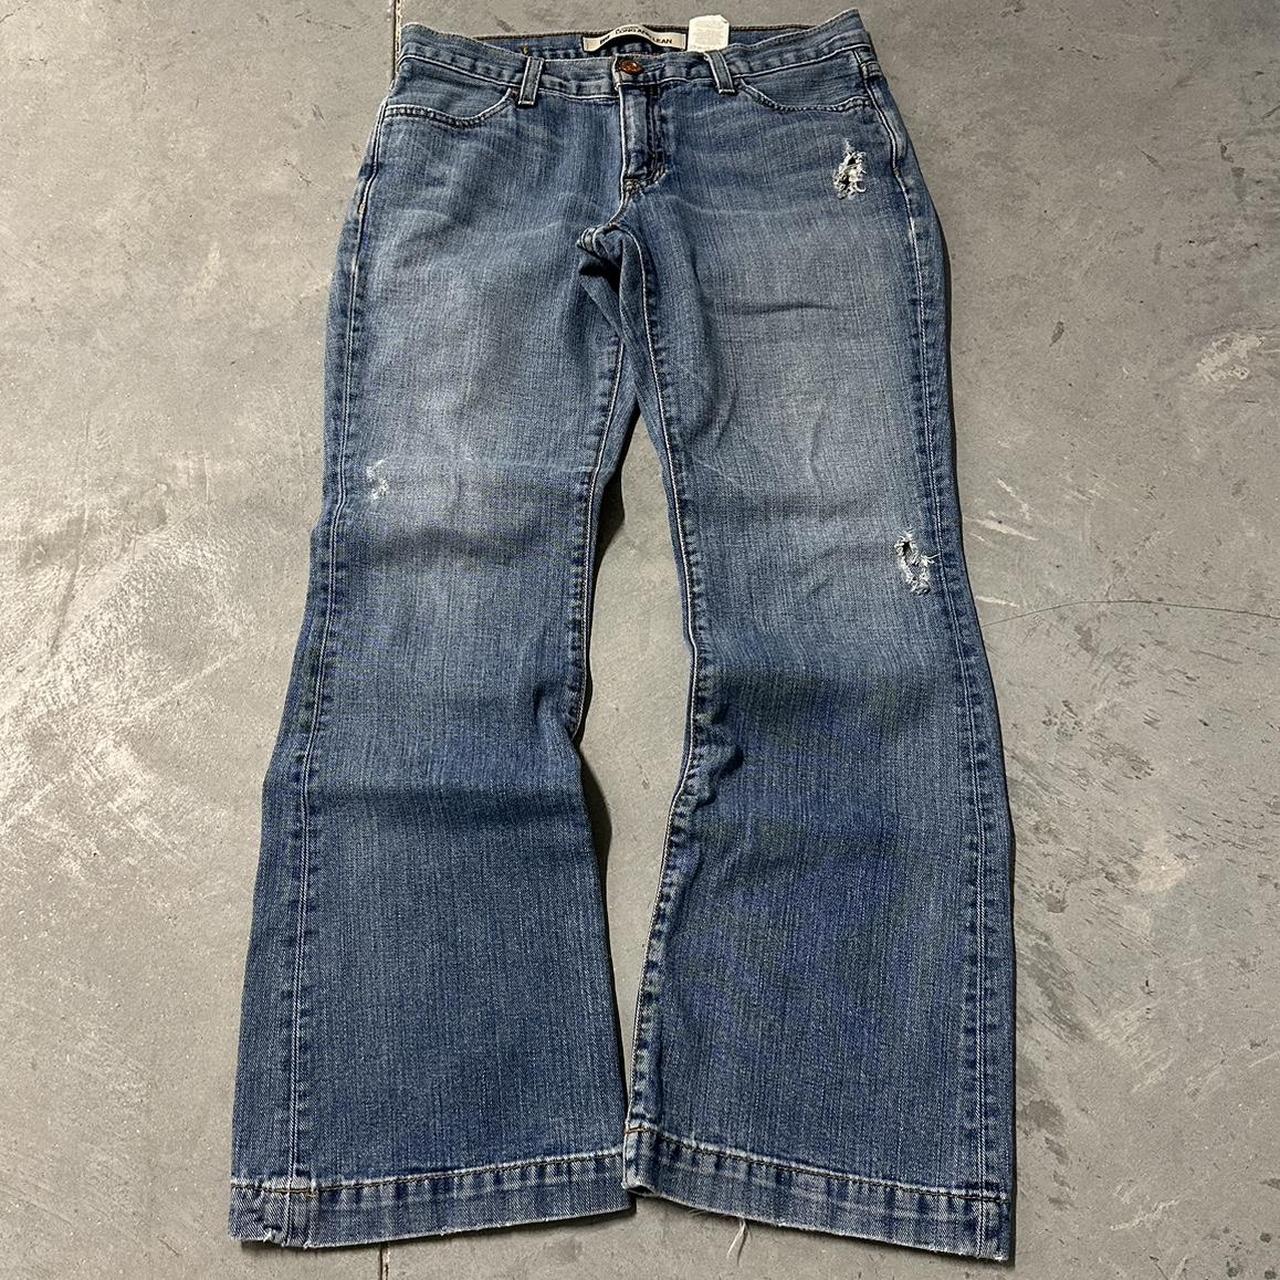 Vintage 90’s Gap flare jeans size wmns 4, measure... - Depop